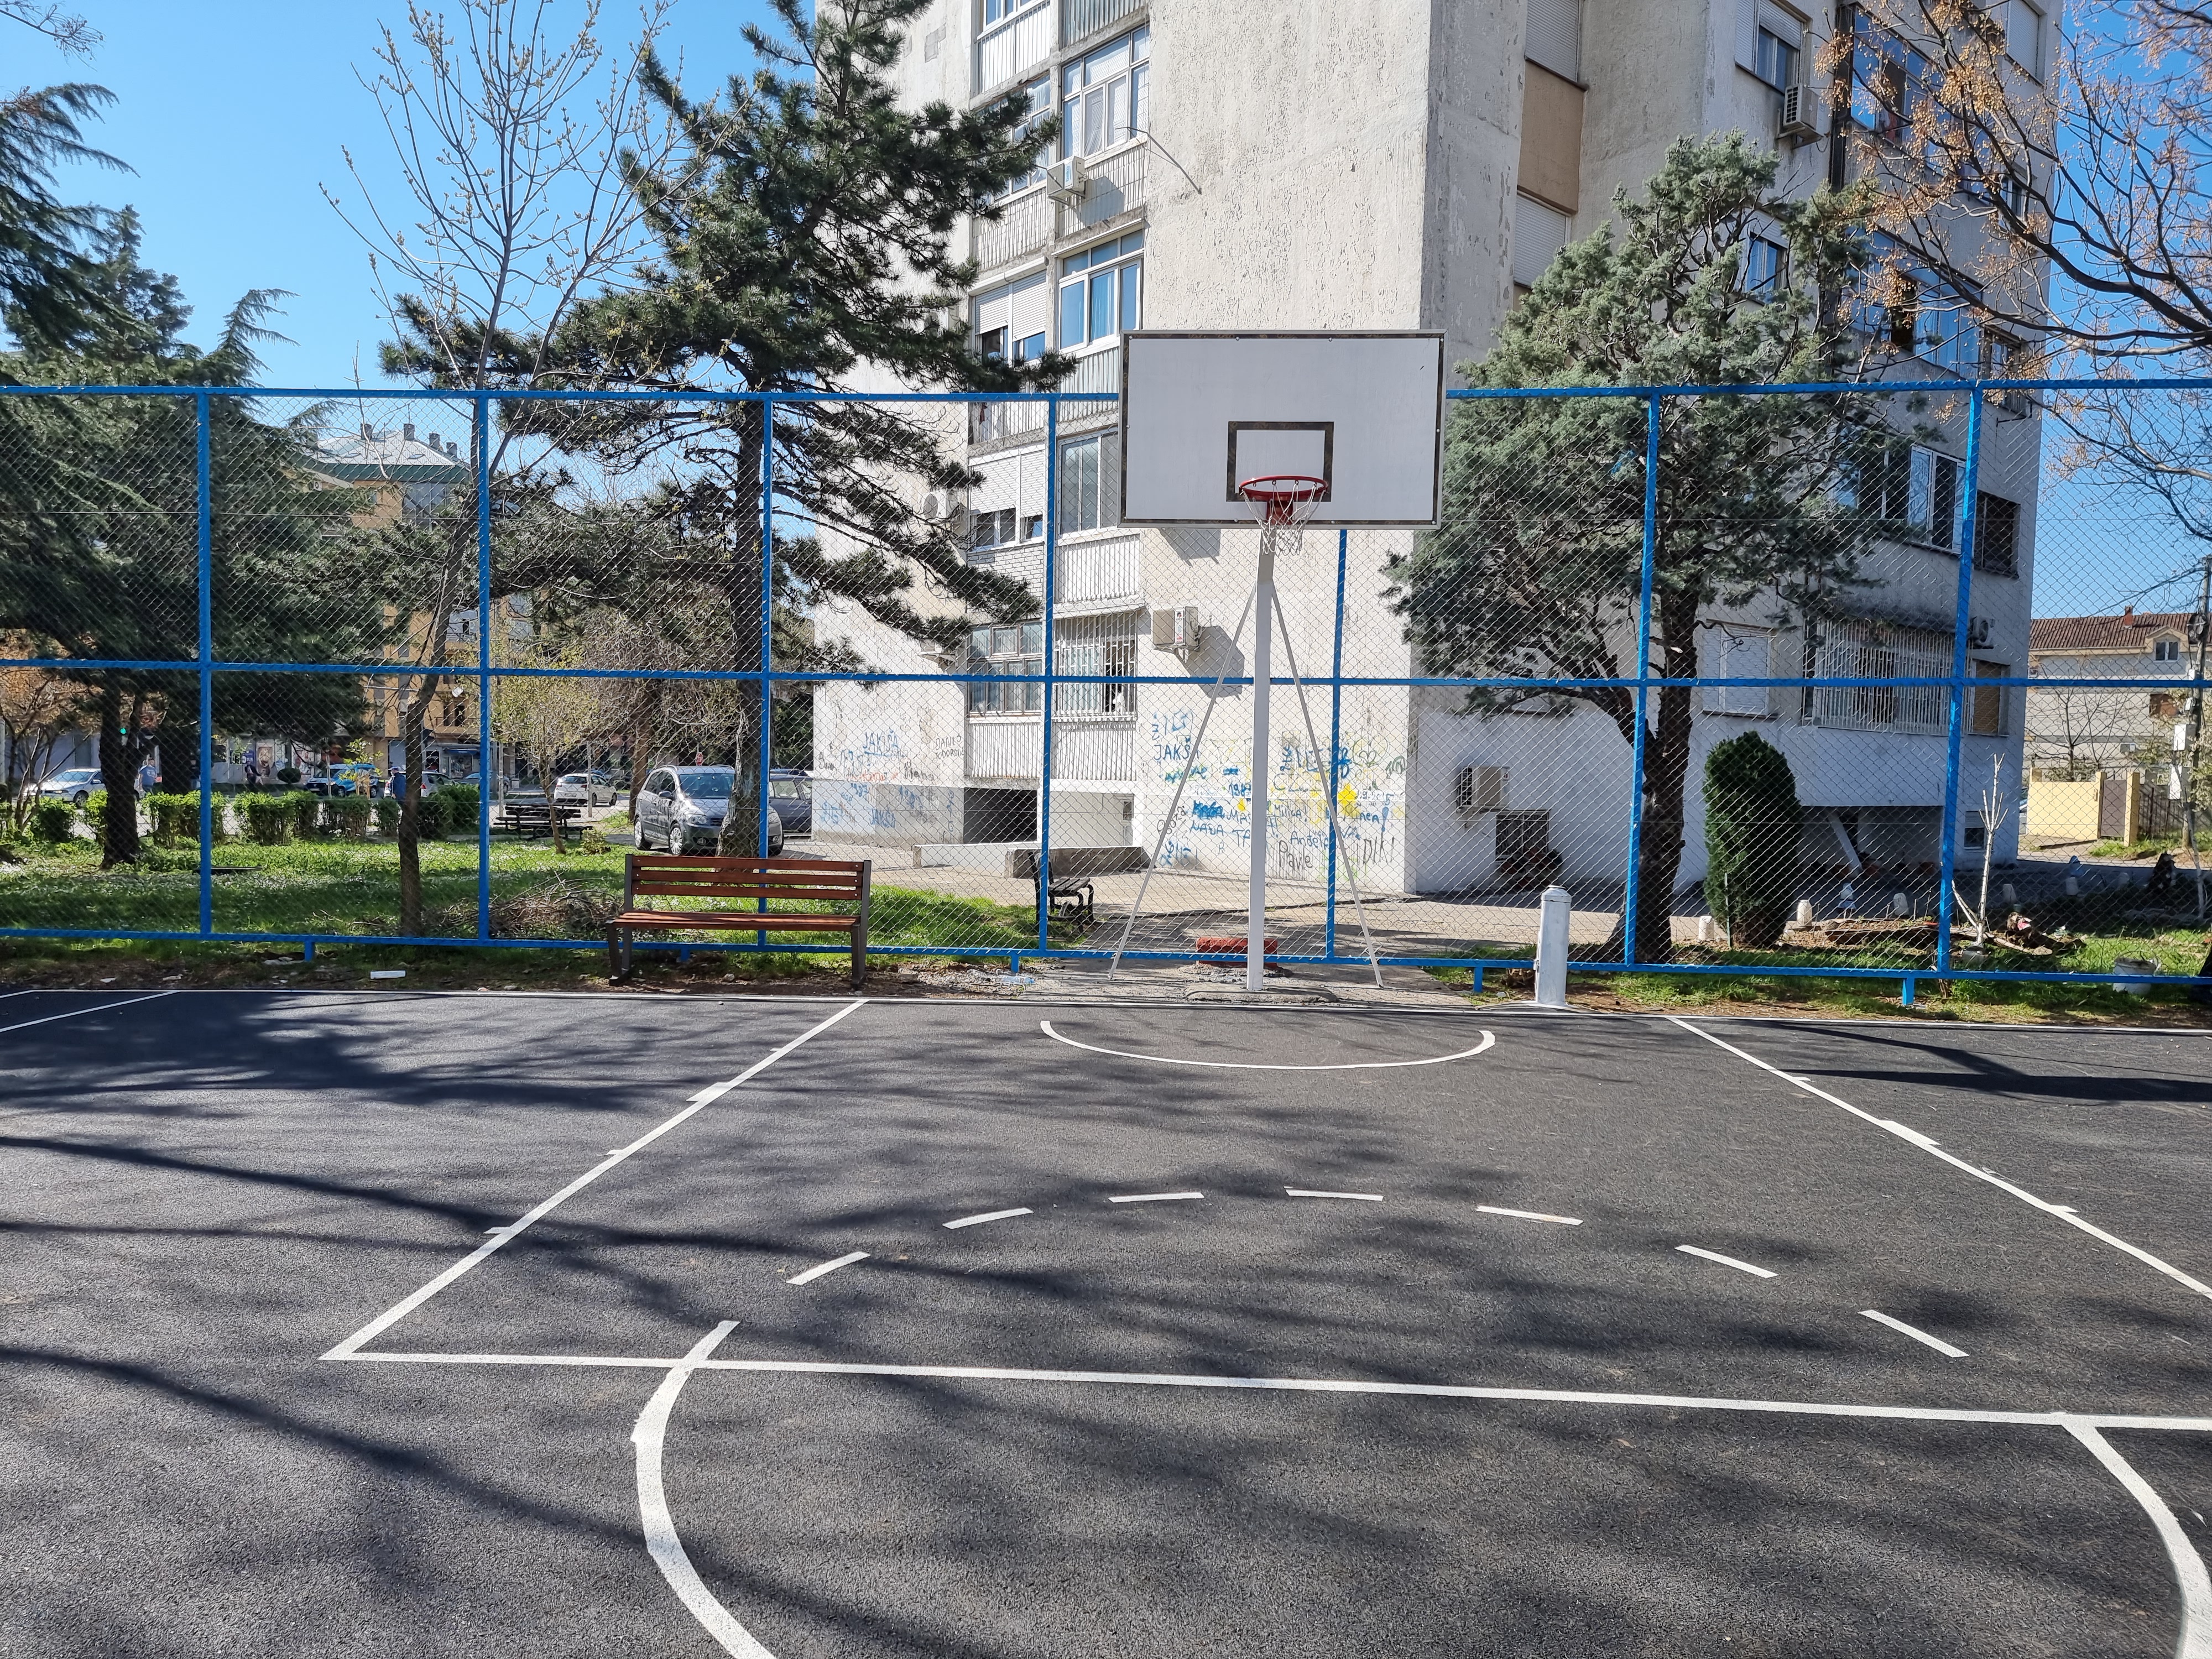 Nastavlja se dobra praksa Glavnog grada iz prethodne godine; Sve veći broj novih i obnovljenih sportskih poligona u Podgorici